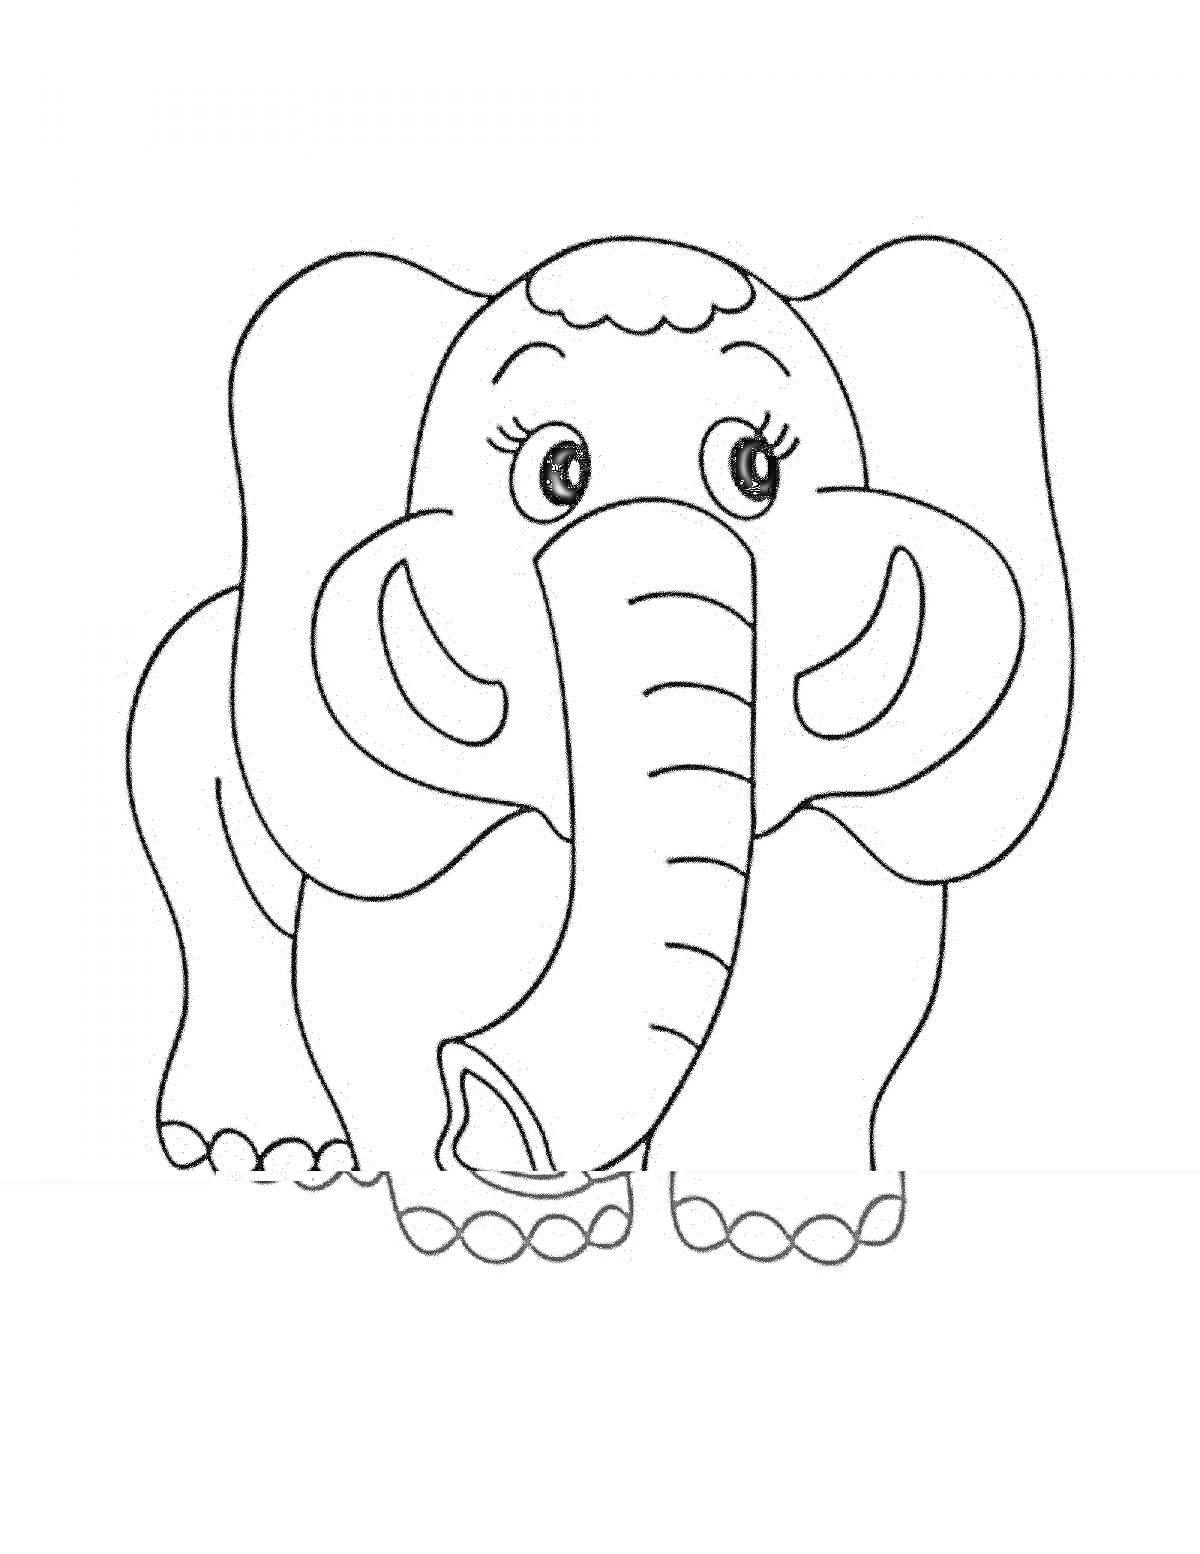 Раскраска слоник с большими ушами и длинным хоботом, стоит на траве